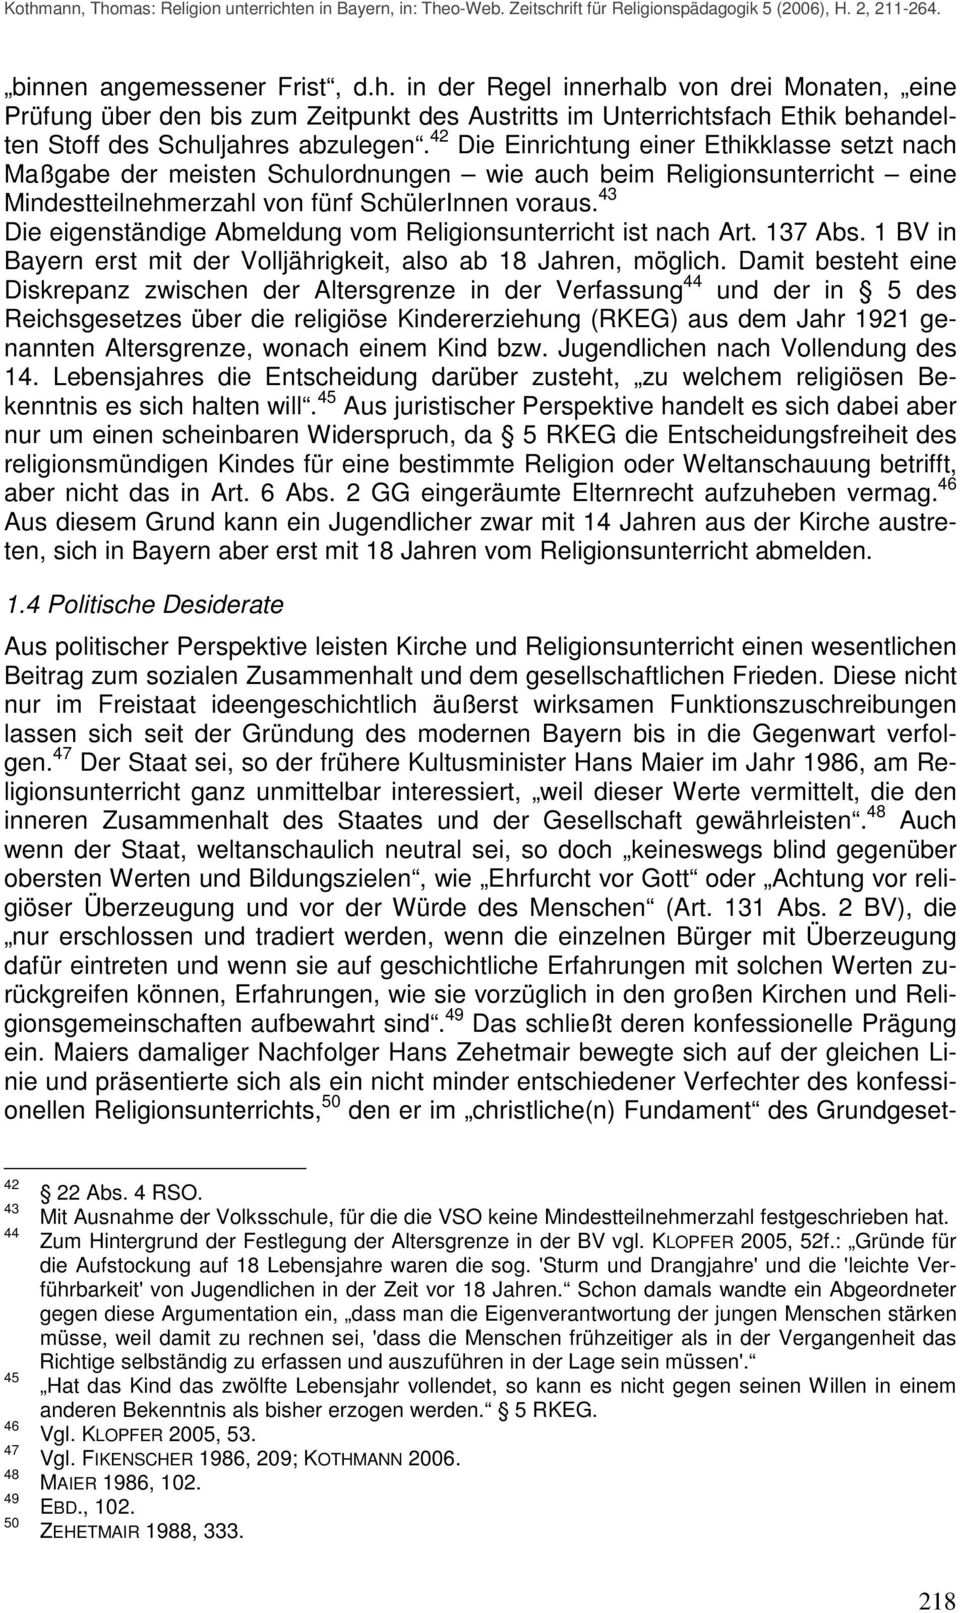 43 Die eigenständige Abmeldung vom Religionsunterricht ist nach Art. 137 Abs. 1 BV in Bayern erst mit der Volljährigkeit, also ab 18 Jahren, möglich.